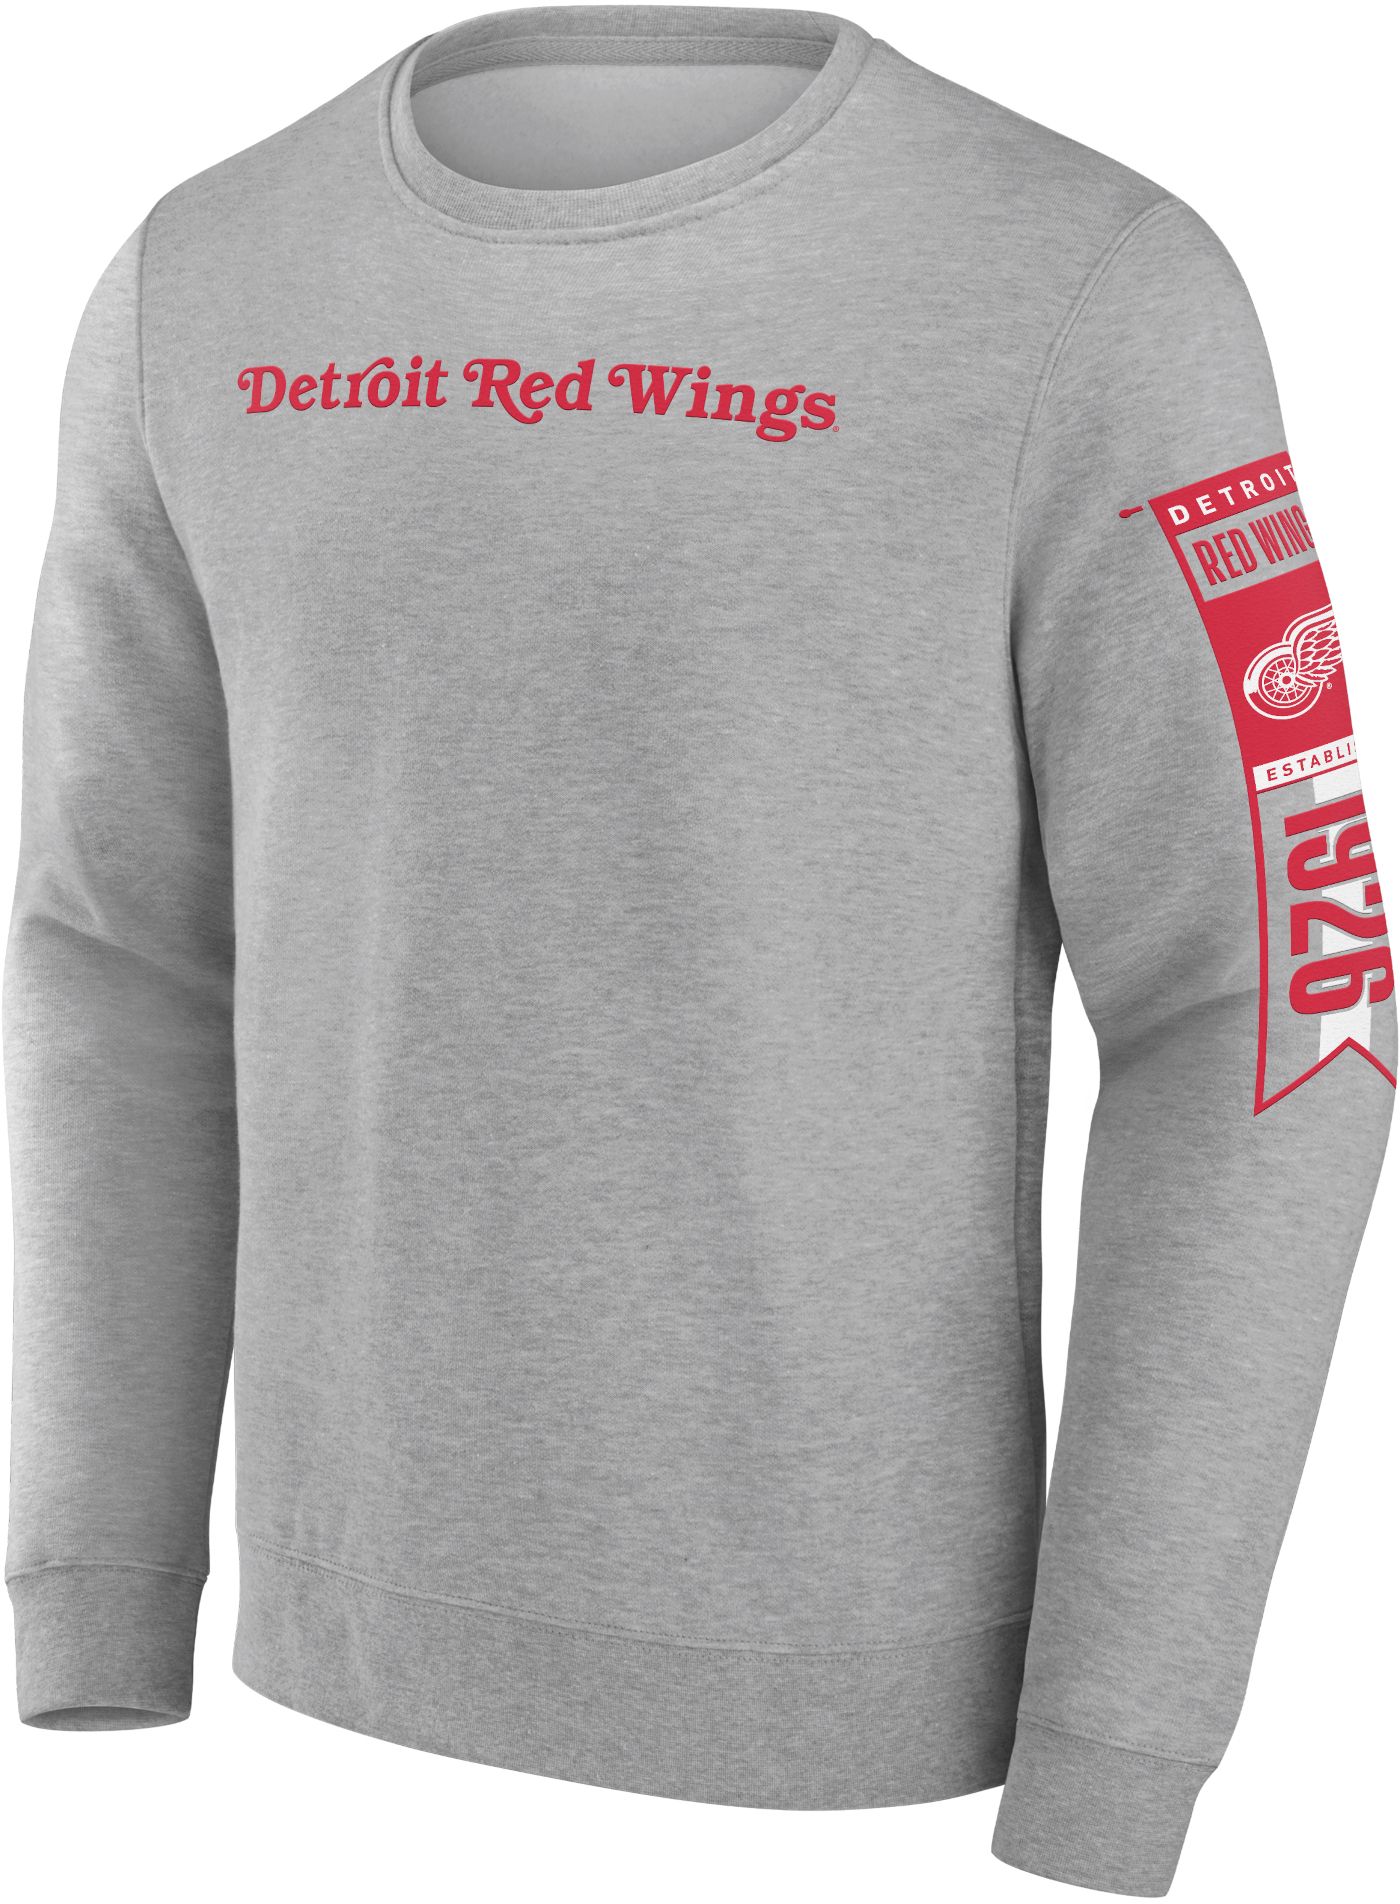 detroit red wings hoodie jersey